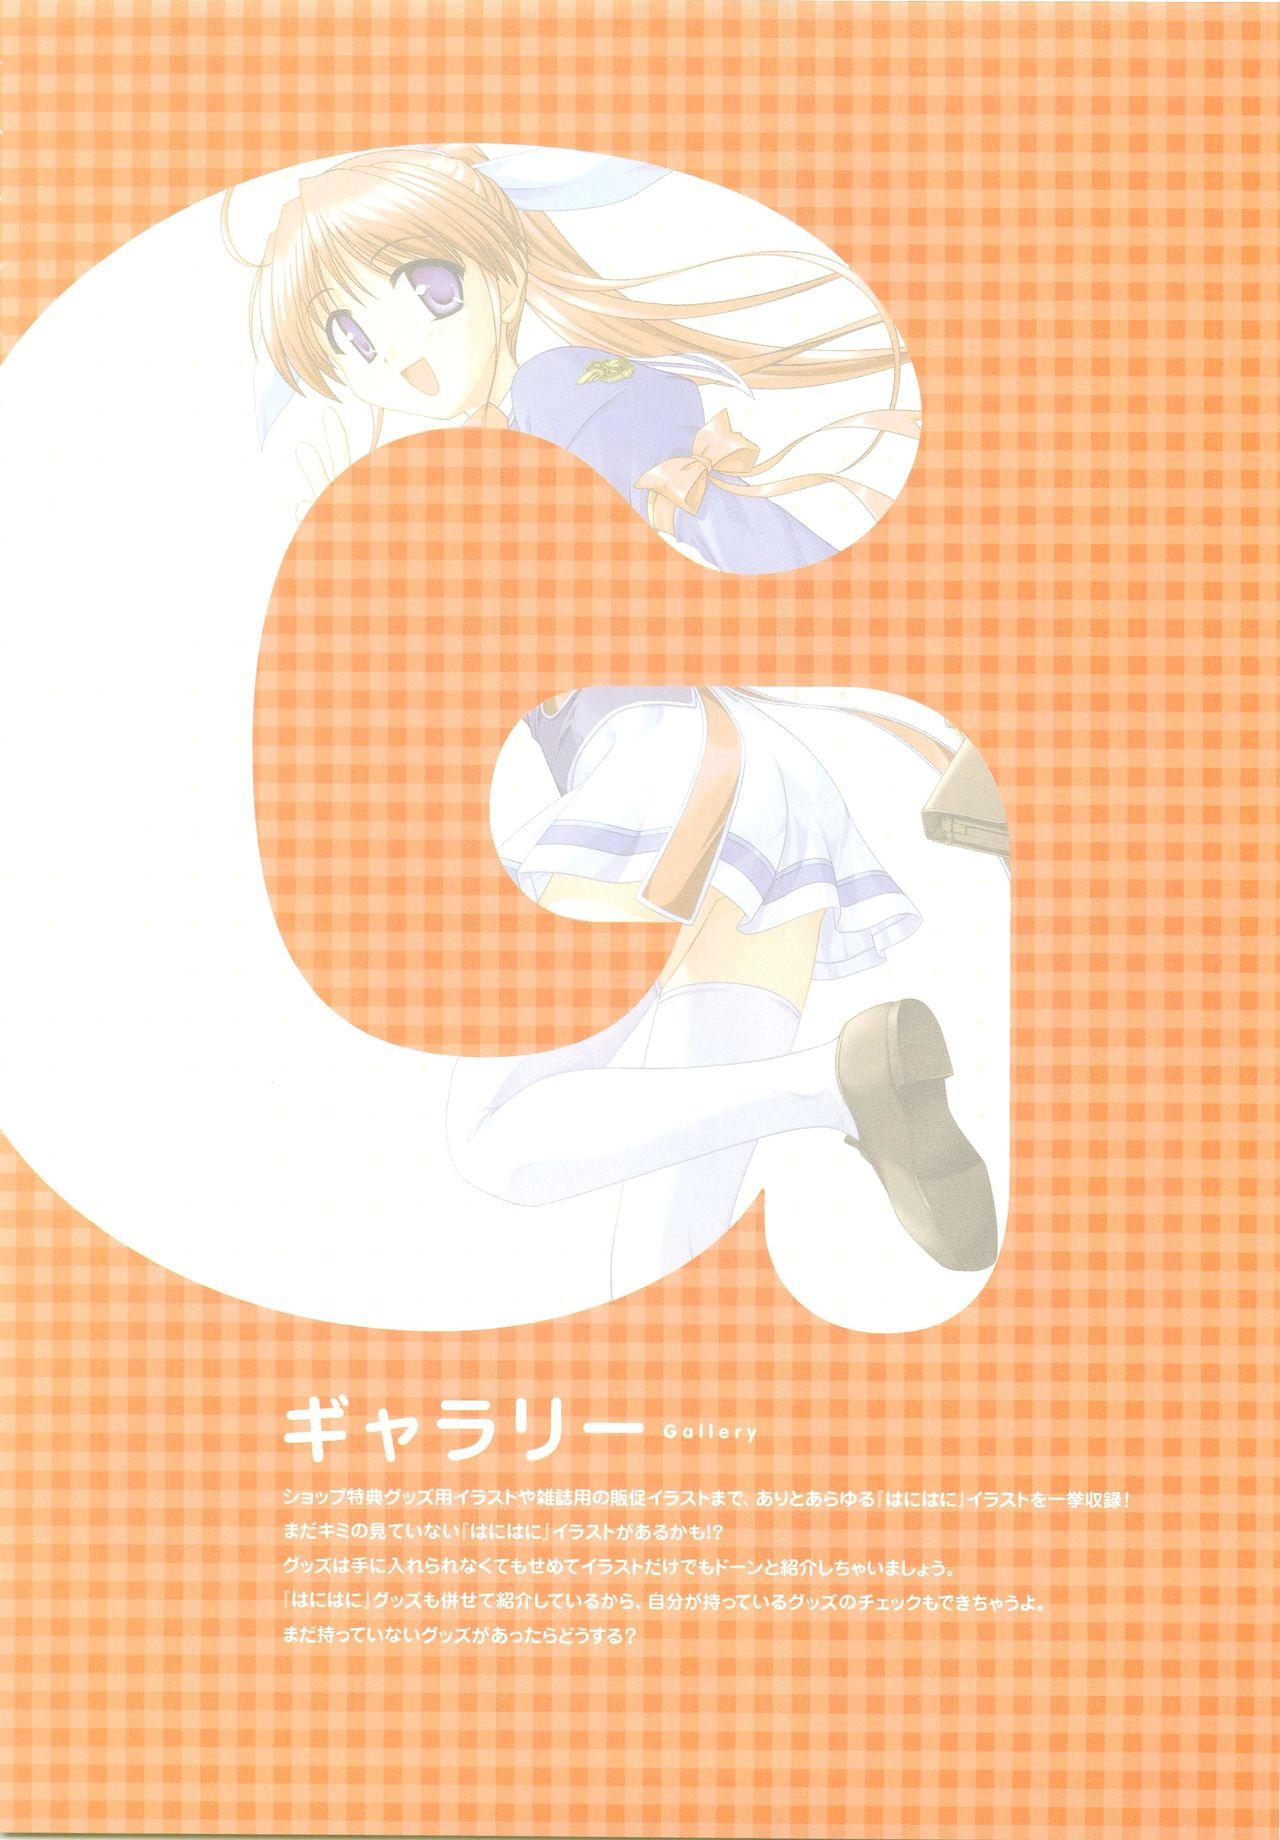 Tsuki wa Higashi ni Hi wa Nishi ni - Operation Sanctuary - Visual Fan Book Shokai Ban 201